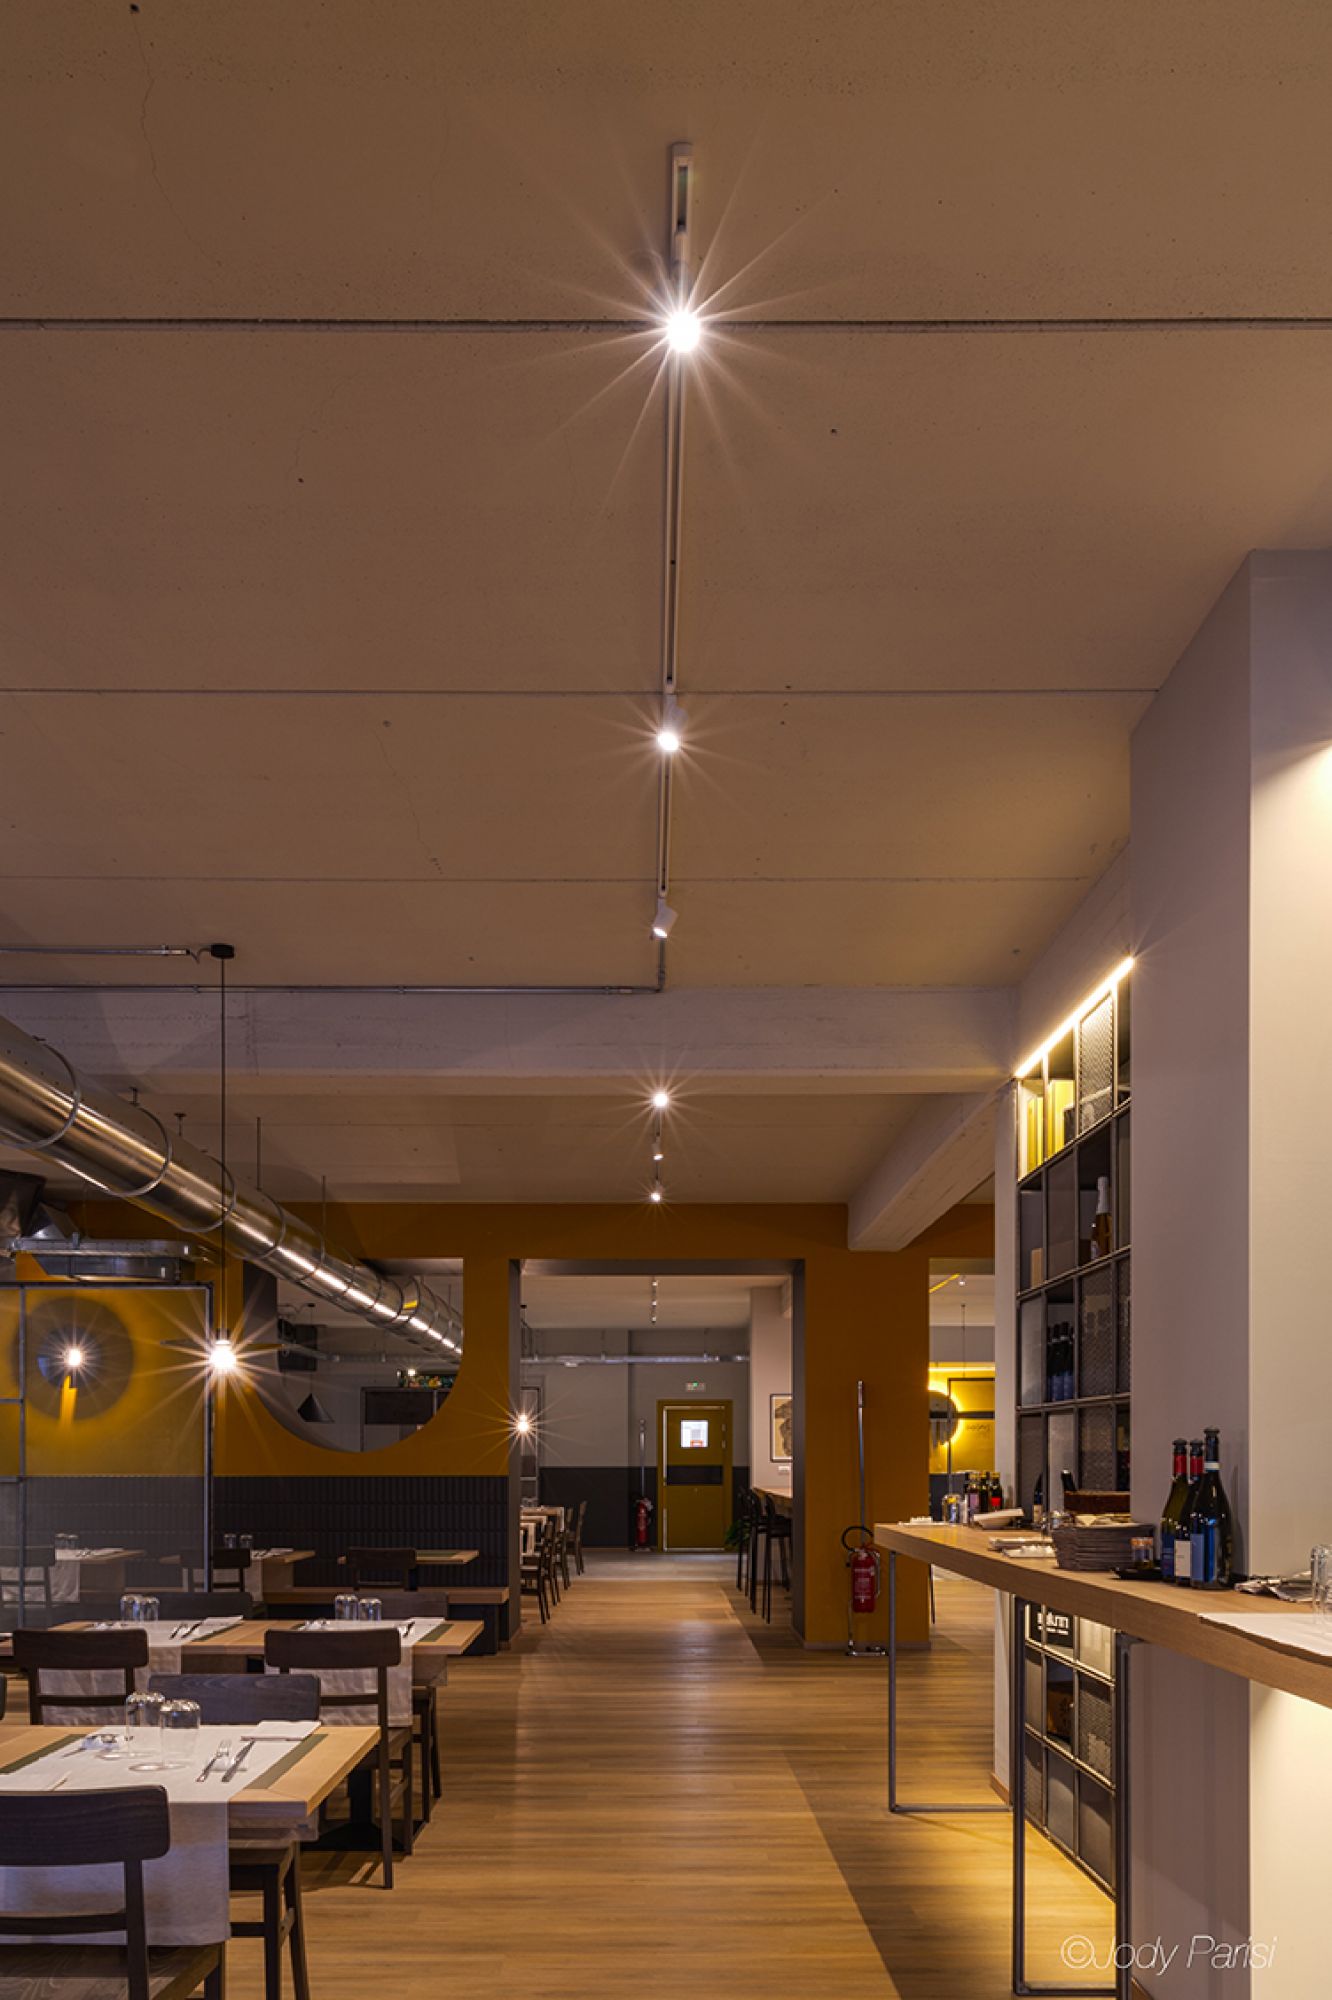 Sala ristorante illuminata con faretti da soffitto e luci a sospensione